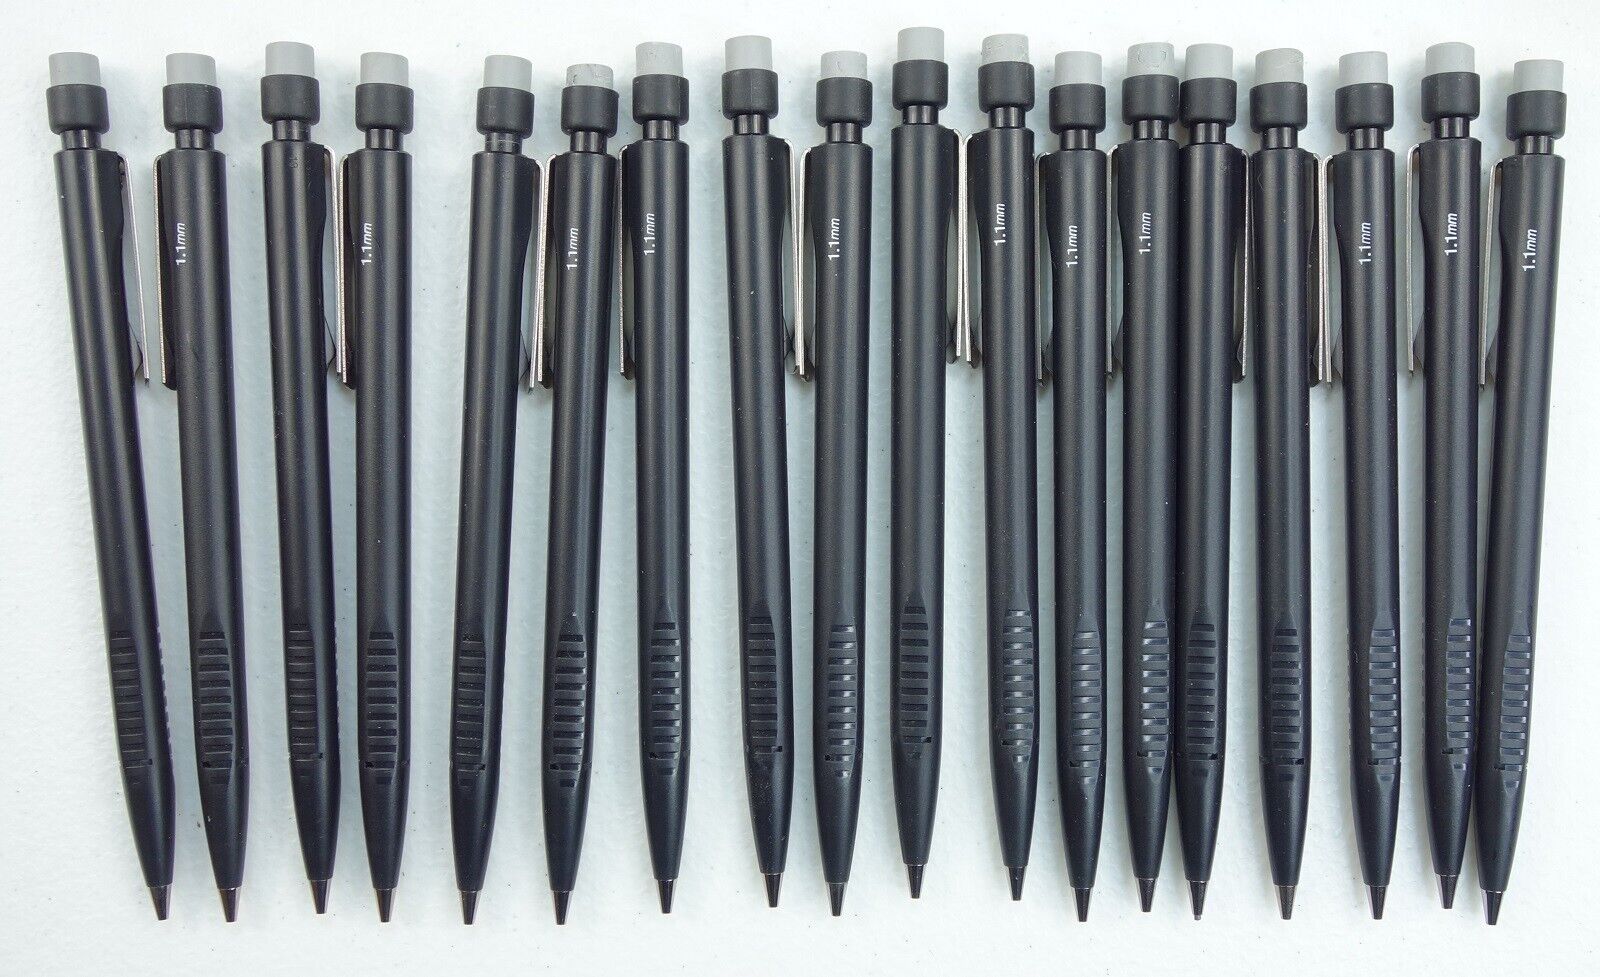 18 Vintage Skilcraft 1.1mm Mechanical Pencils Black & Gray Eraser US Government